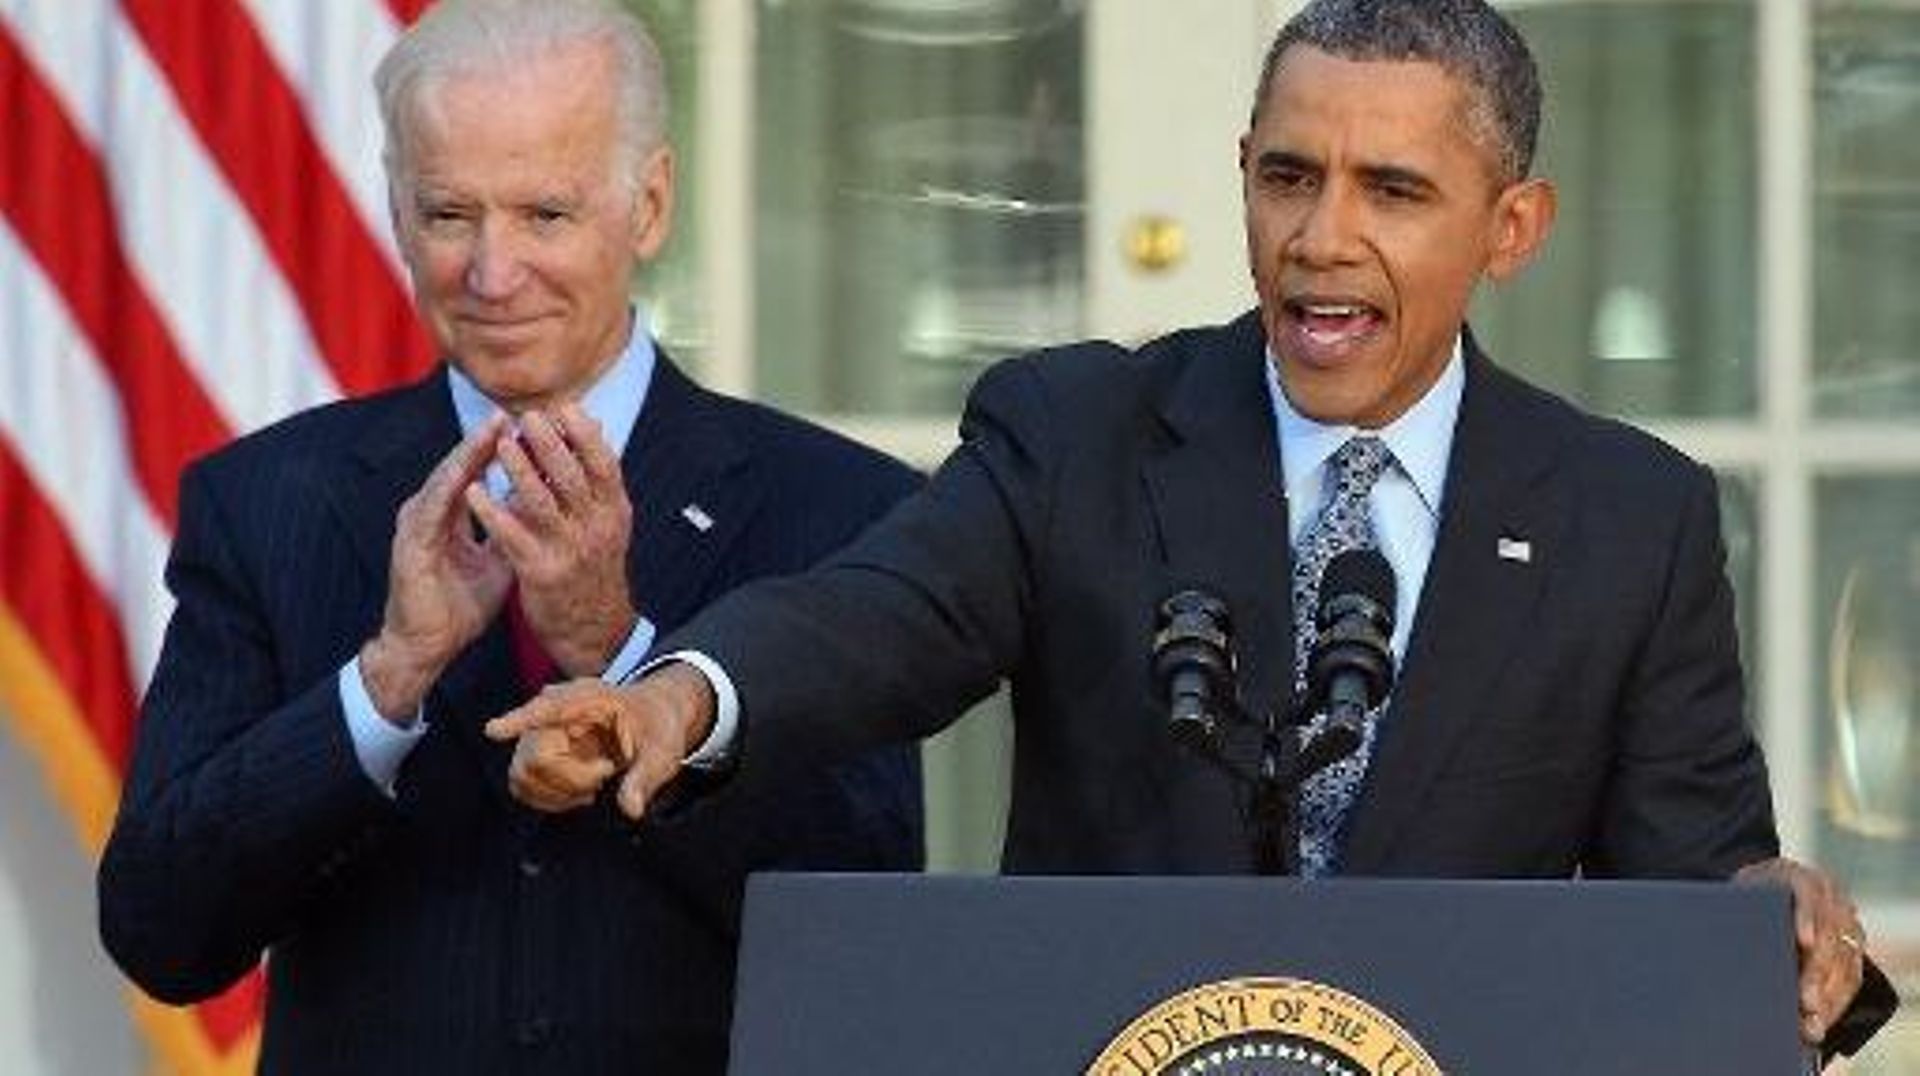 Le président américain Barack Obama, accompagné de son vice-président Joe Biden, se félicite, le 1er avril 2014 à La Maison Blanche à Washington, d'avoir dépassé son objectif de 7 millions d'Américains ayant souscrit à une couverture maladie 